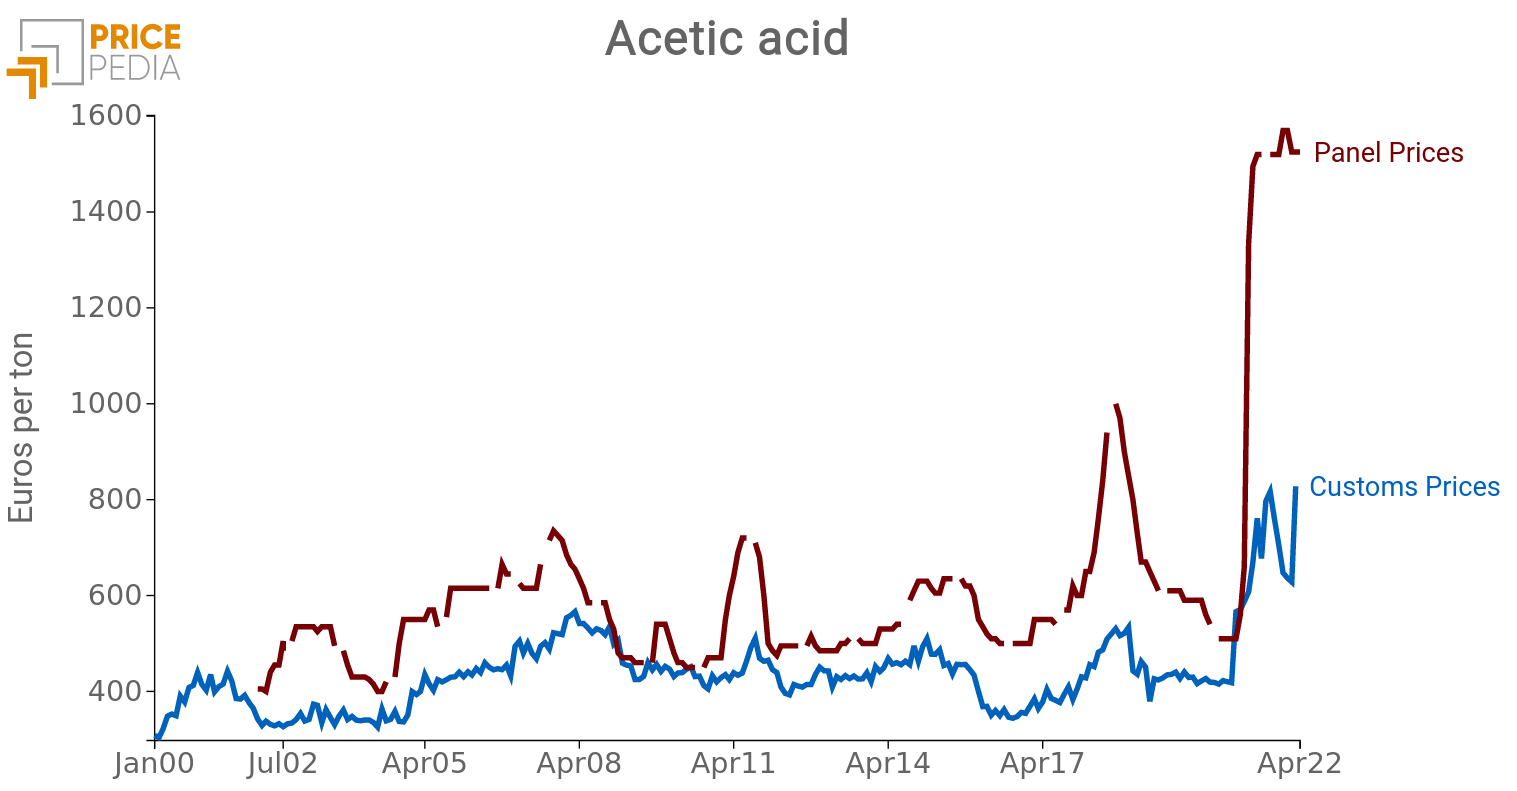 Price Acetic acid